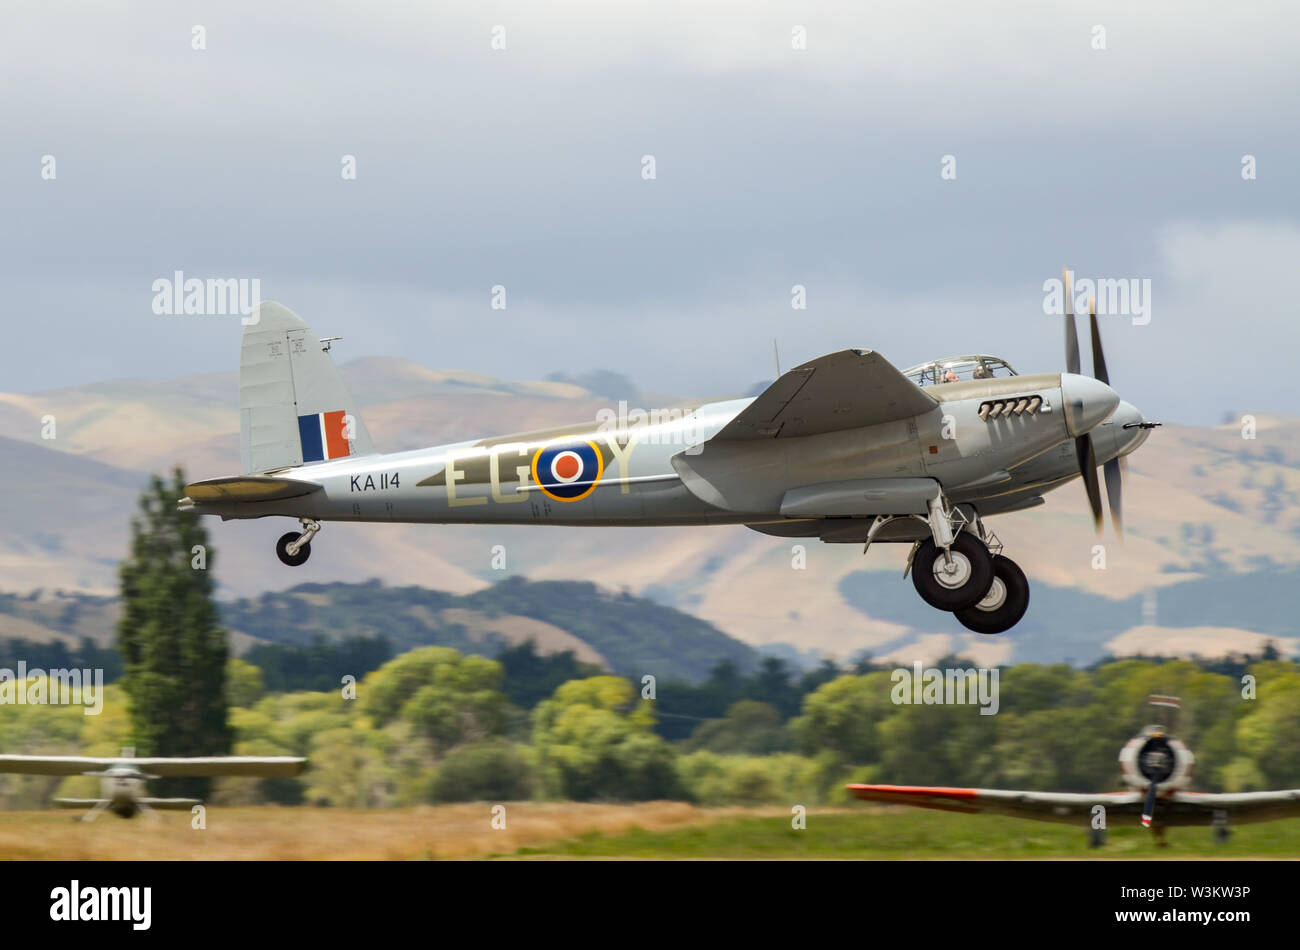 De Havilland DH.98 Mosquito, aereo da combattimento multiruolo della RAF che servì durante la seconda guerra mondiale, decollando in nuova Zelanda. Ripristinato al volo Foto Stock